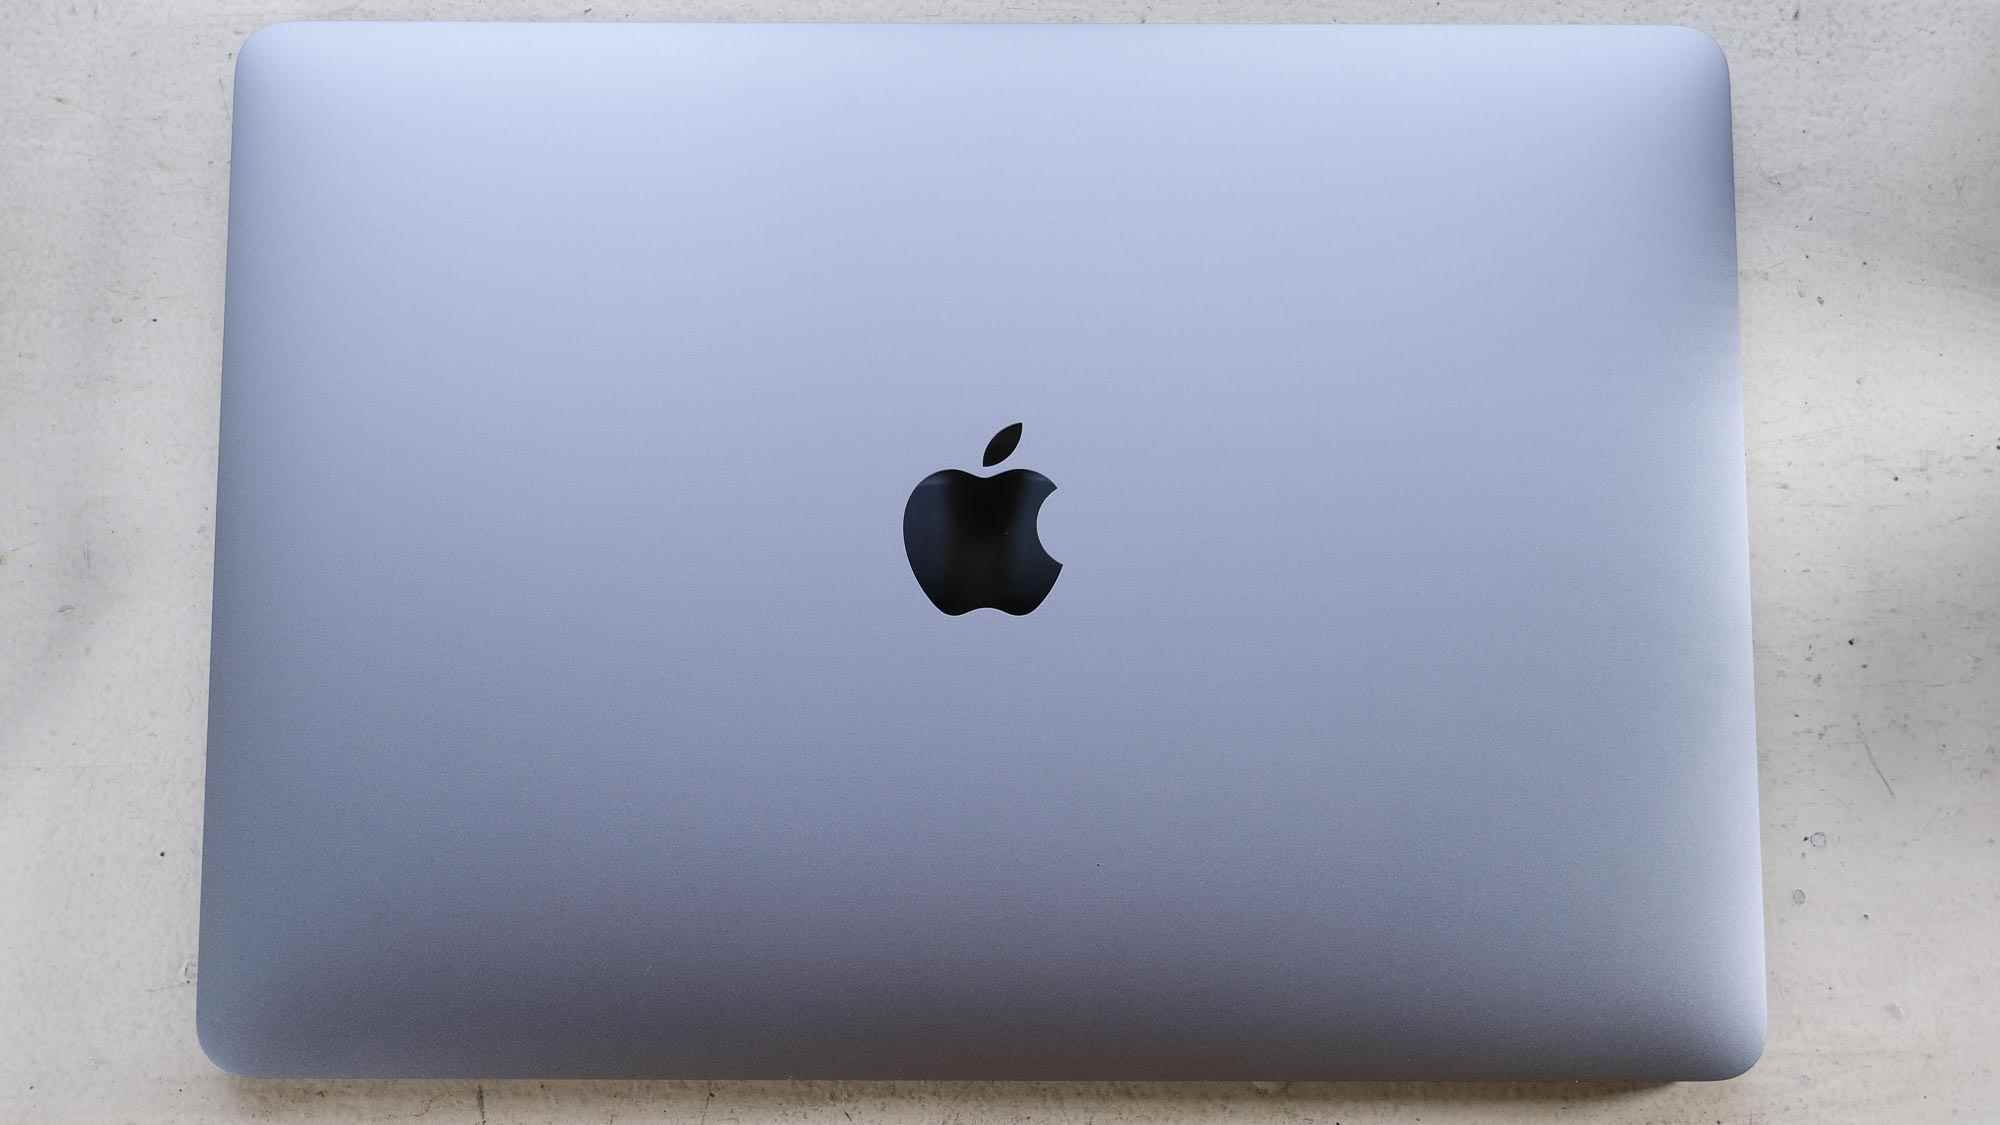 En İyi MacBook'lar - M1 ile MacBook Air - Tasarım